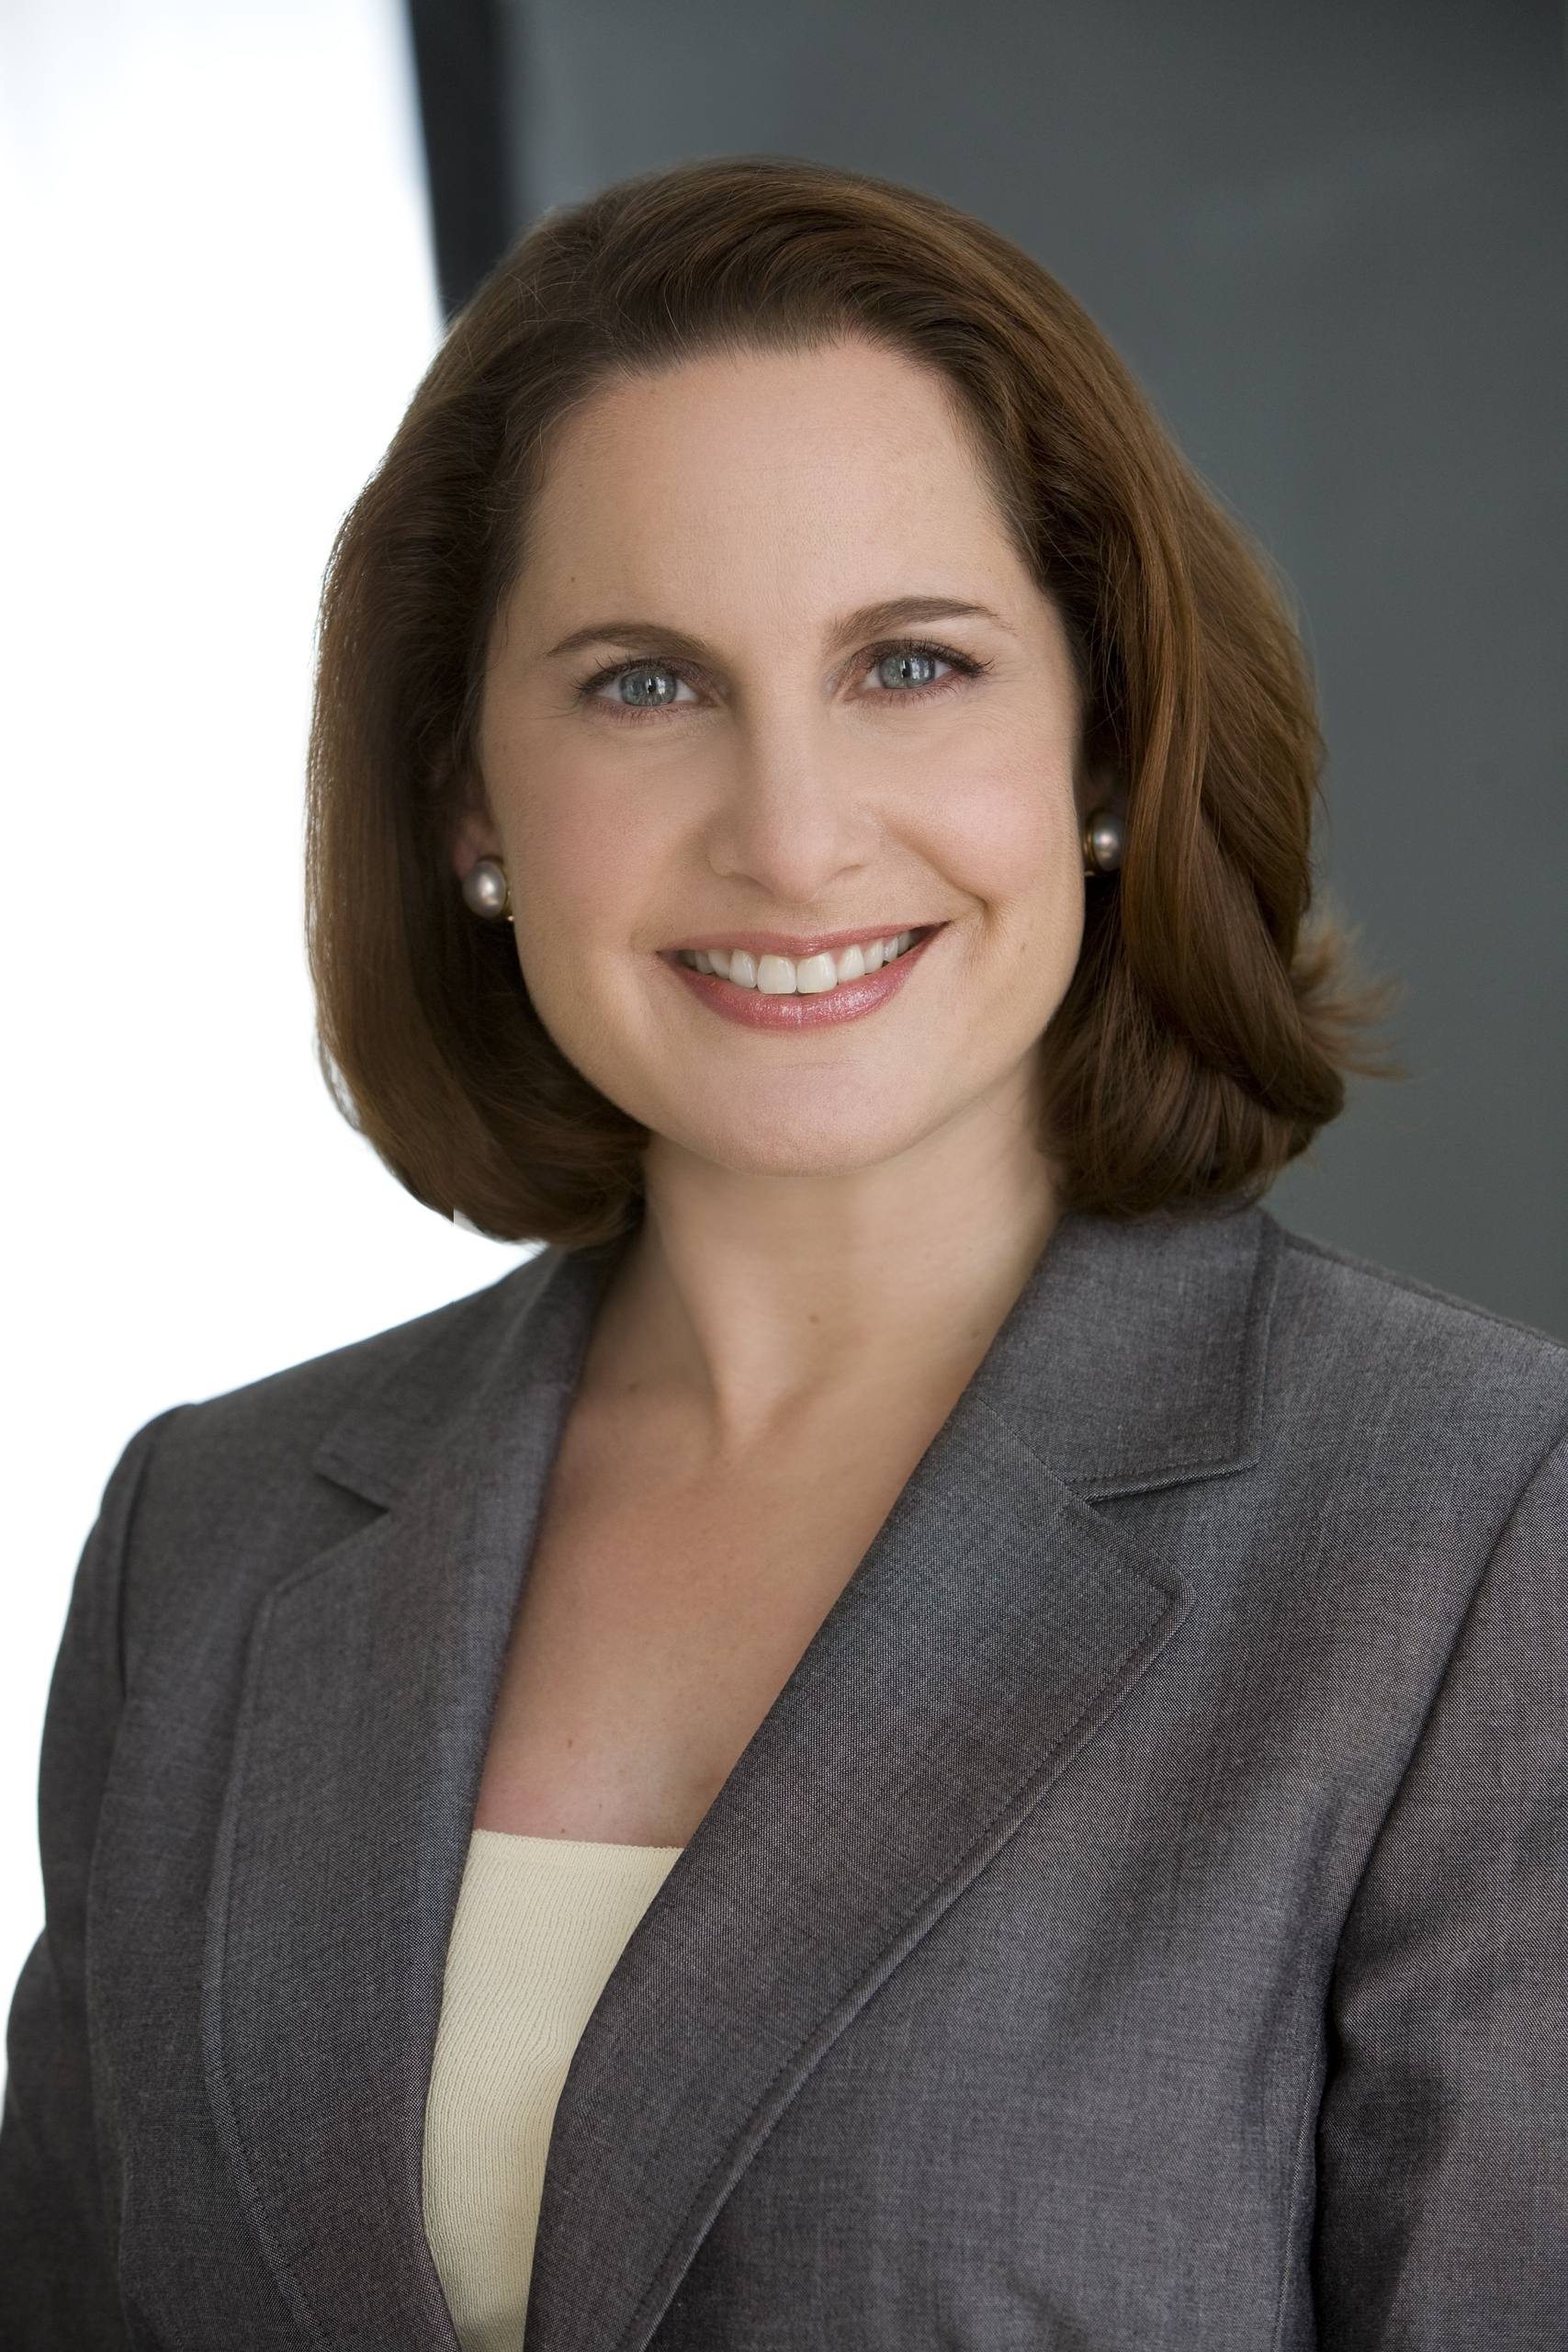 Small Business Attorney Nina Kaufman Wins Prestigious Award for Women ...